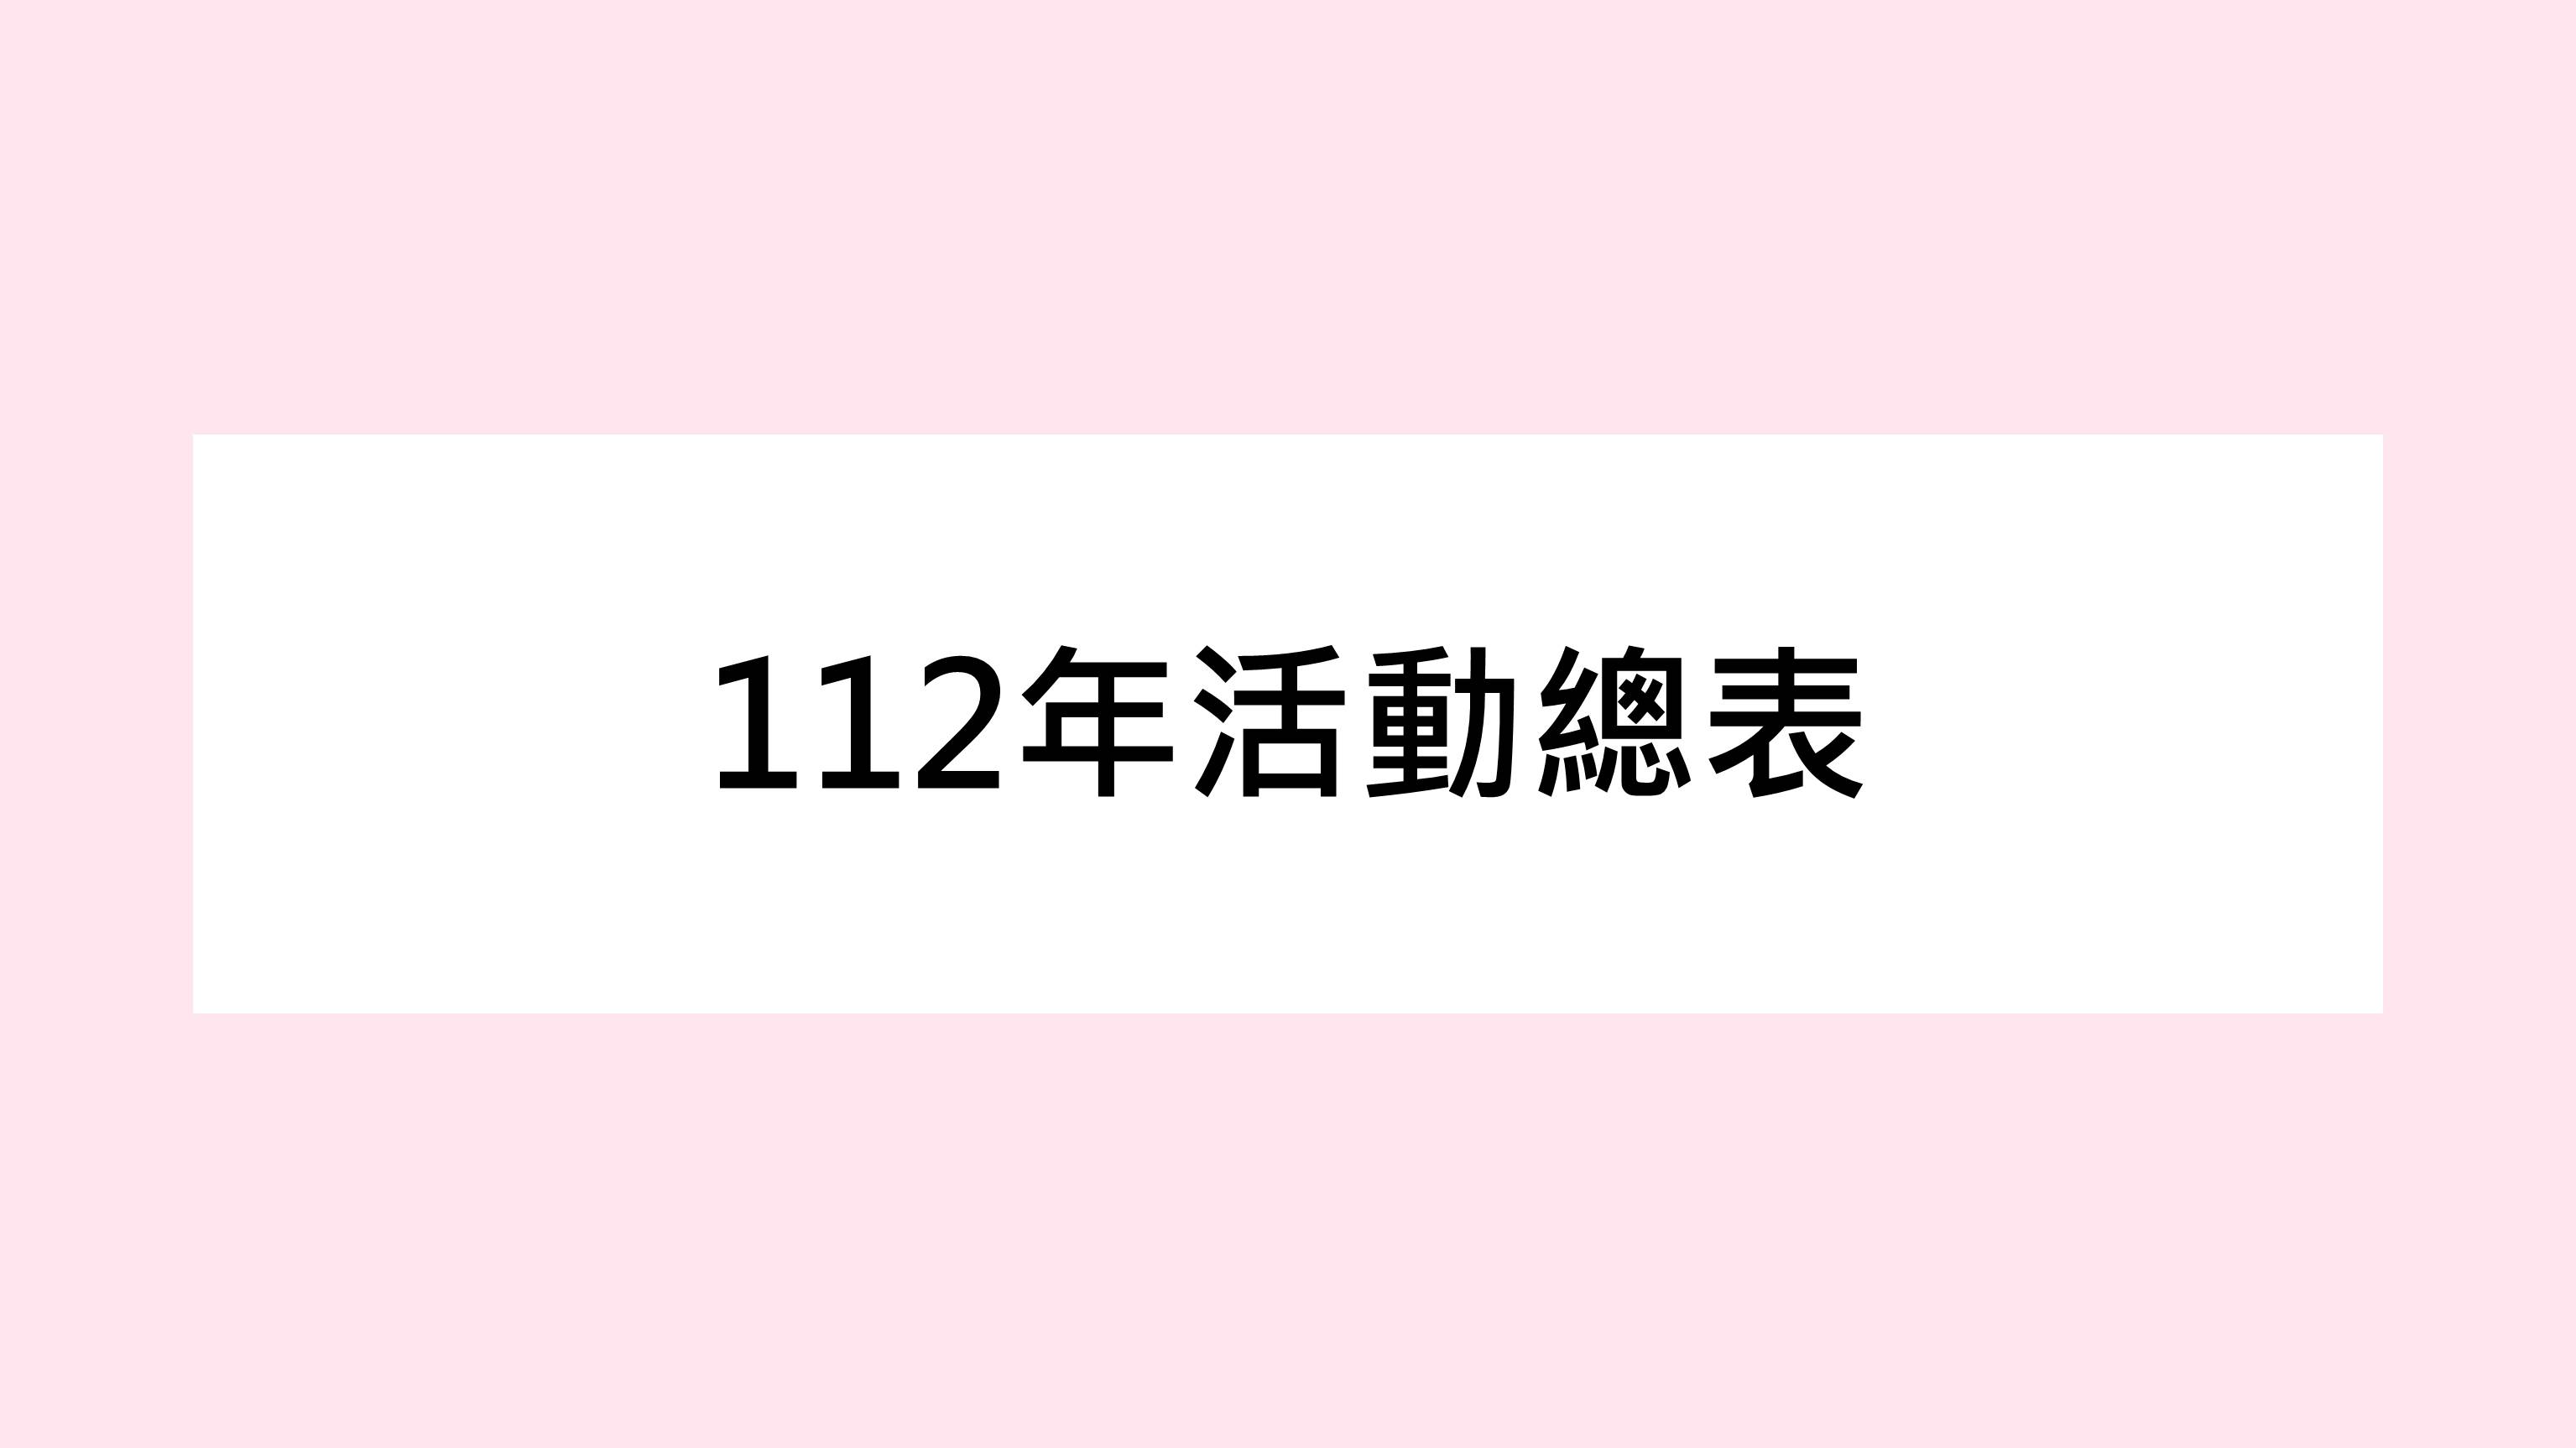 【公告】112年活動